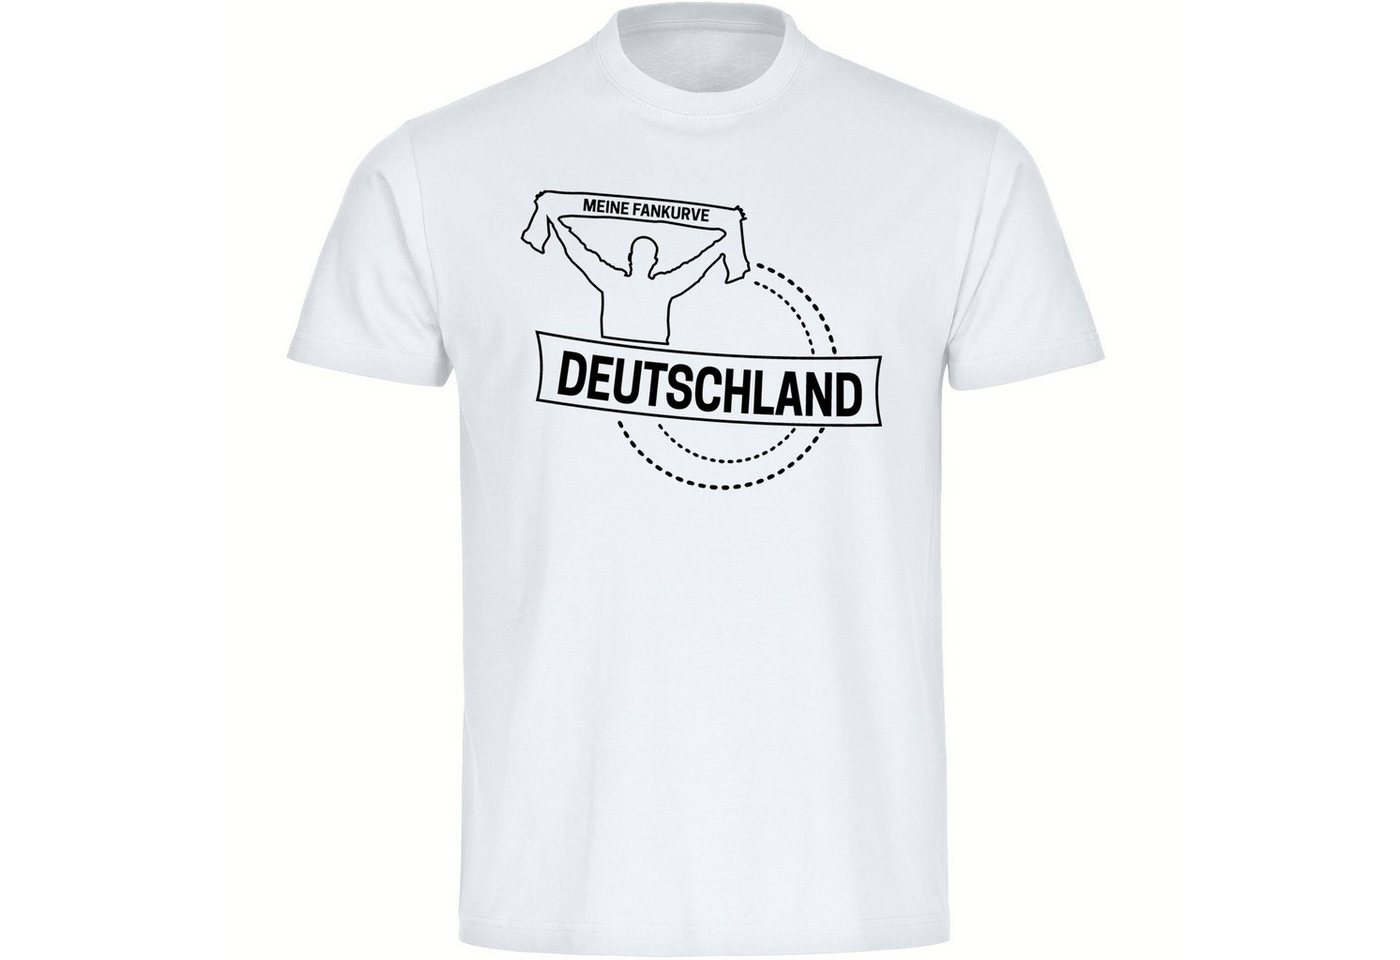 multifanshop T-Shirt Kinder Deutschland - Meine Fankurve - Boy Girl von multifanshop